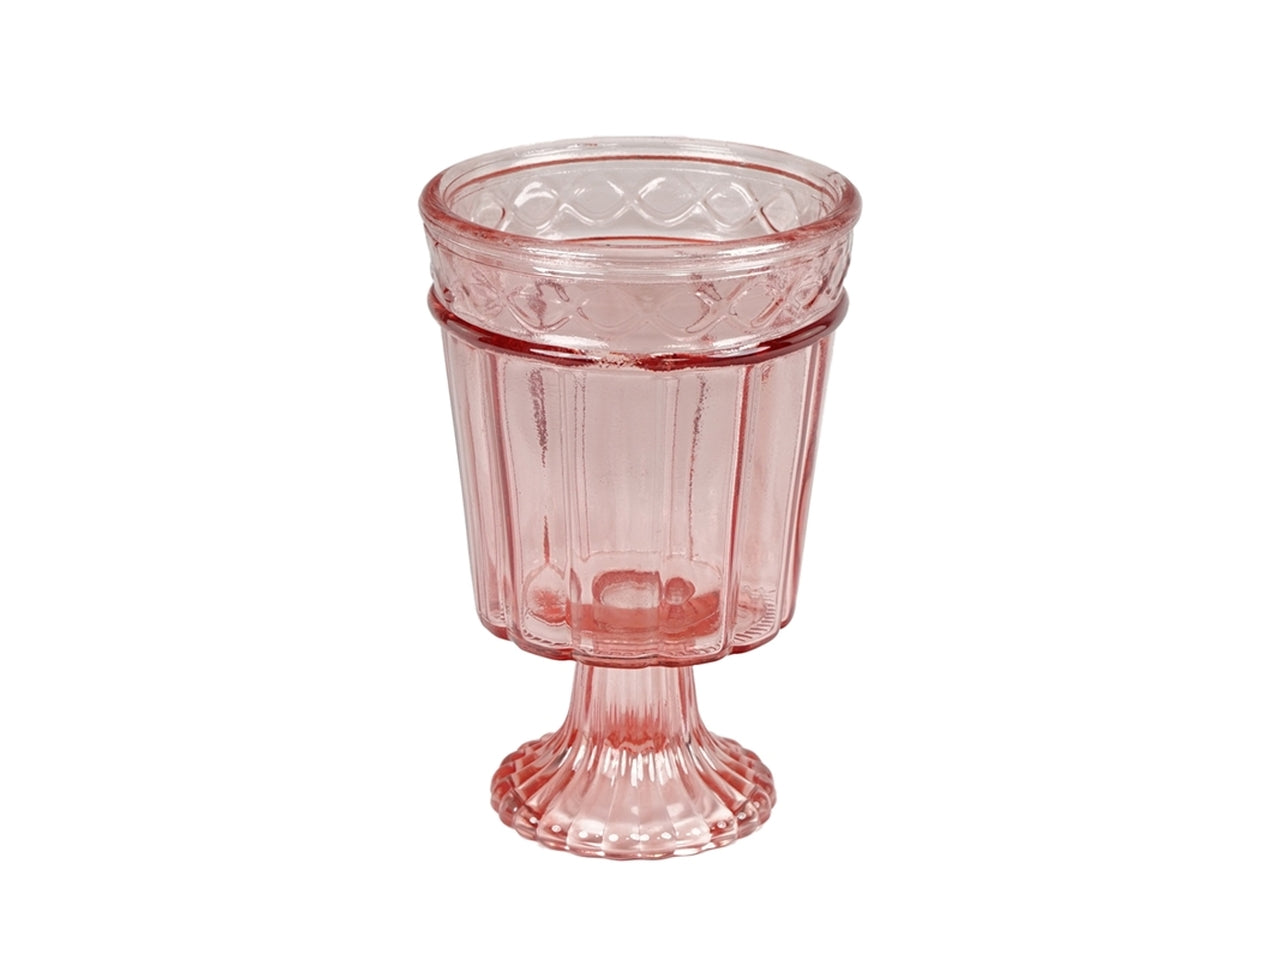 Centrotavola classico con piedistallo in vetro rosa traslucido con decoro a rilievo - 18x13 cm - Plàthea